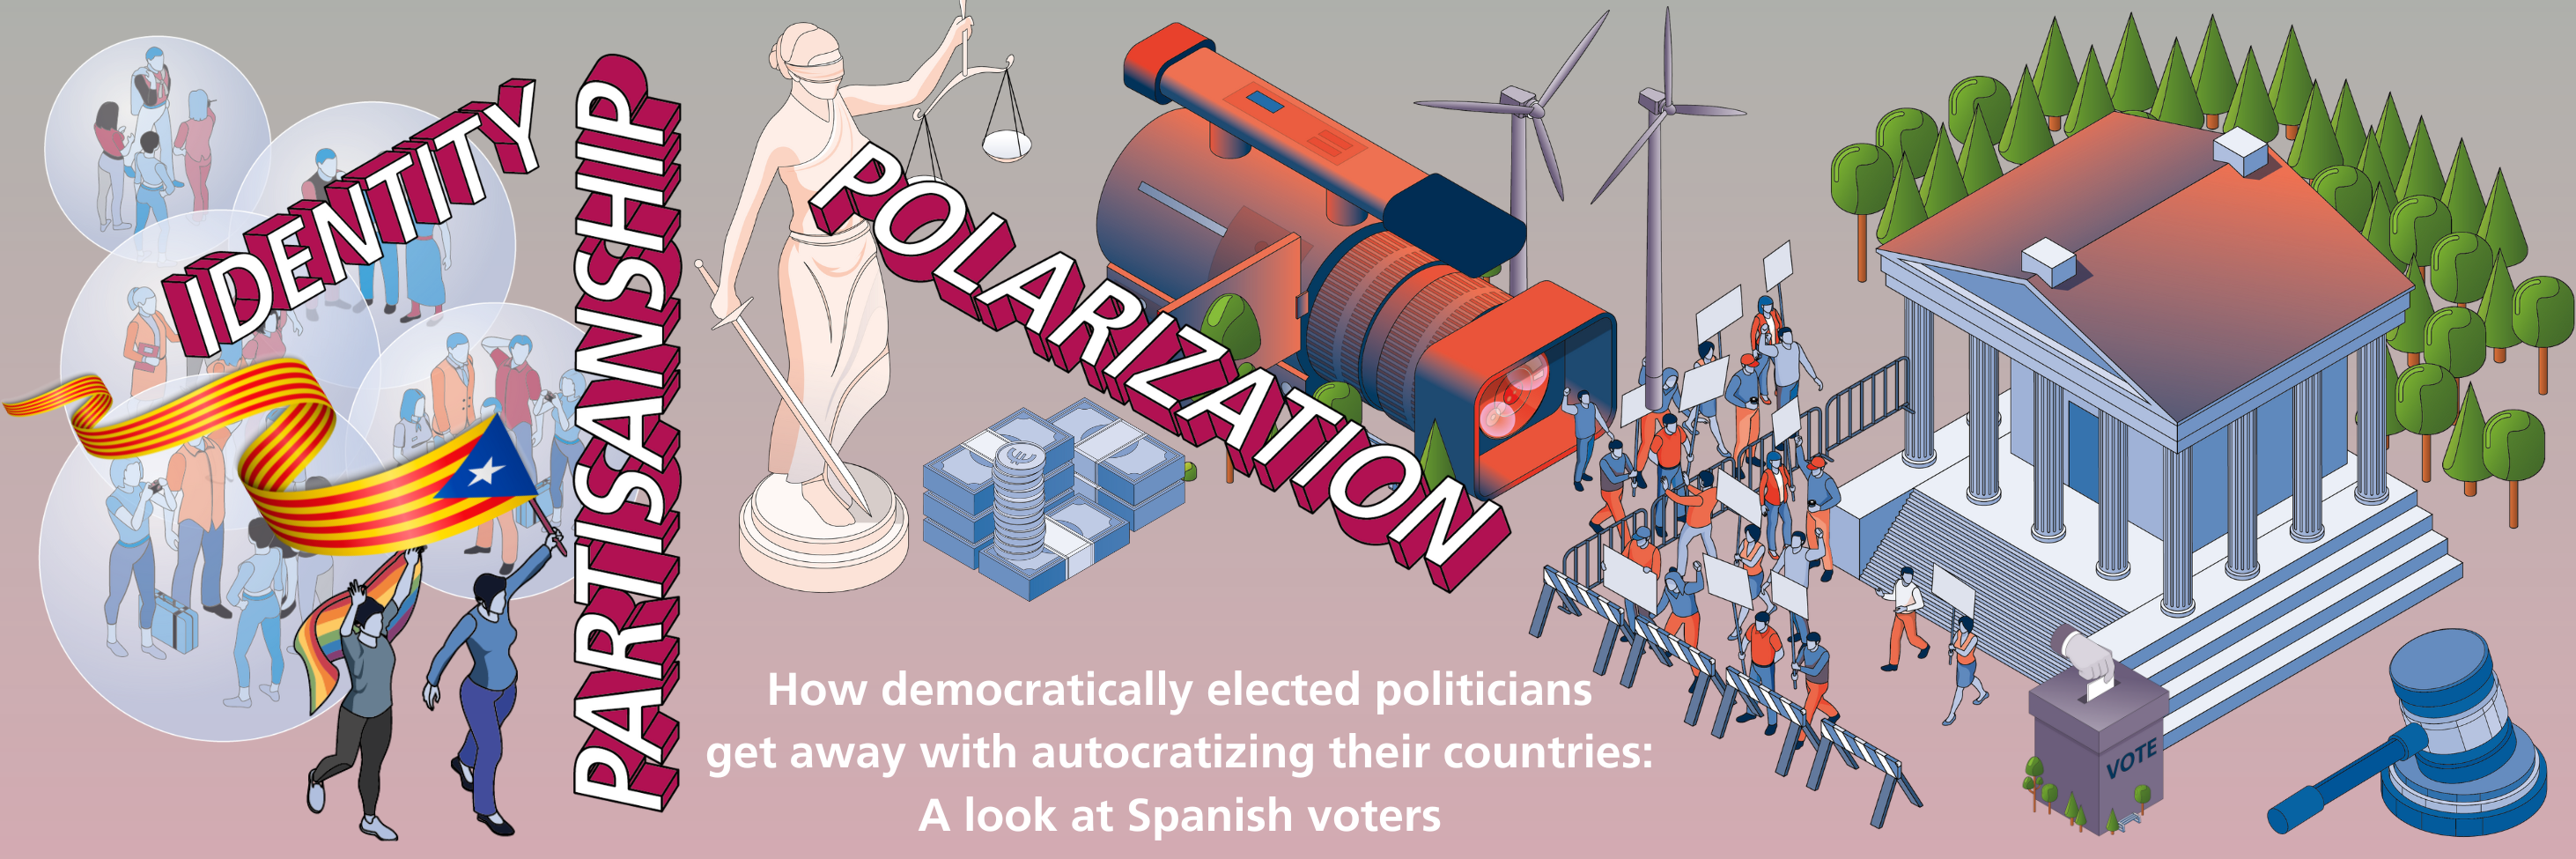 Imatge pels mitjans: Com els polítics democràticament elegits s&#39;escapen de l&#39;autocratització dels seus països: Una mirada als votants espanyols